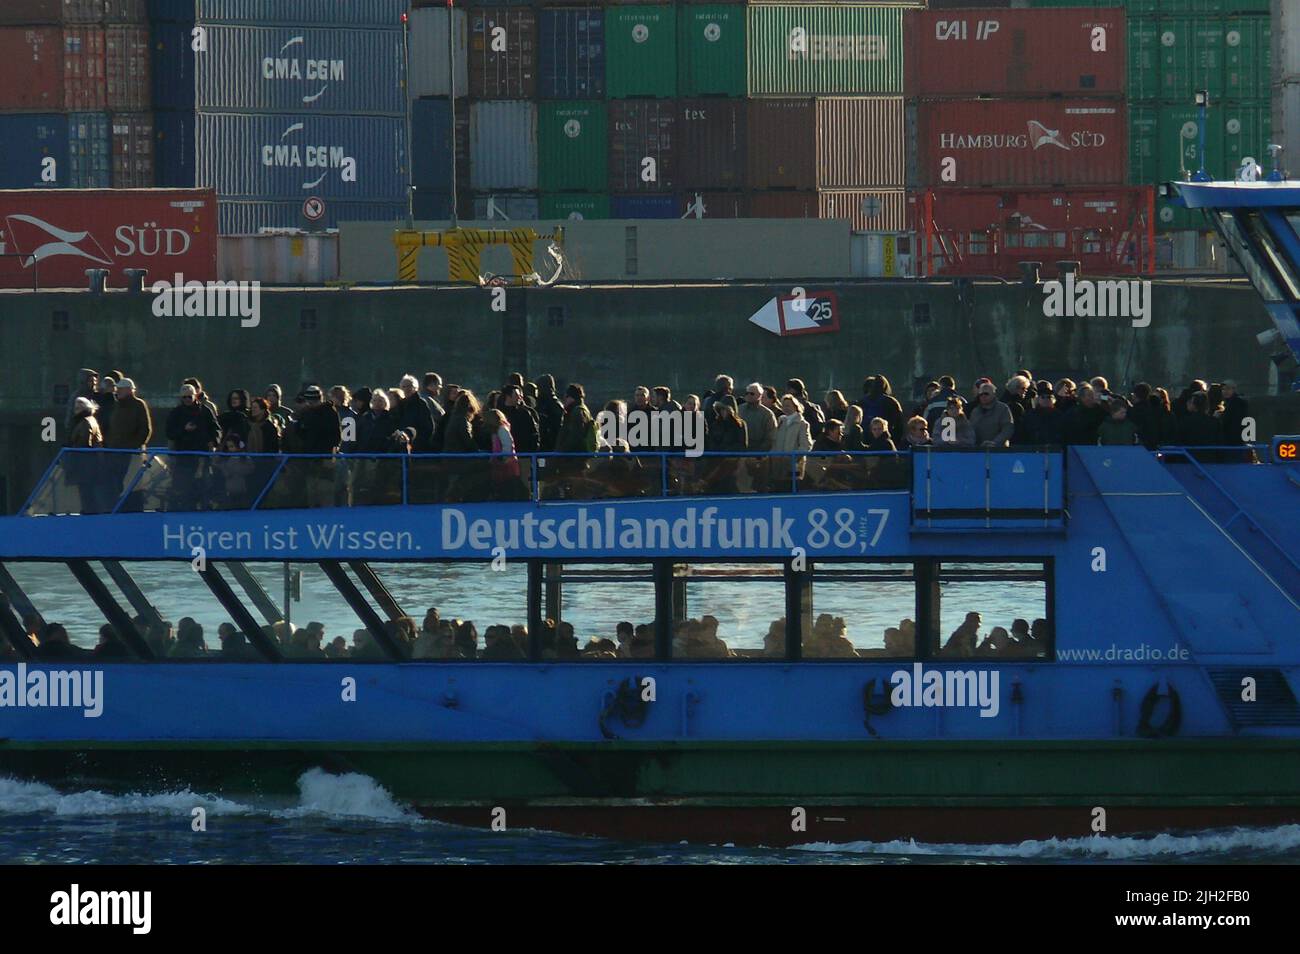 Eine Hafenfähre der Linie 62 fährt in Hamburg an einem Containerfrachter vorbei.Das Deck der Hafenfähre ist  voller Fahrgäste und Touristen. Die Fähre der Linie 62 wird gerne als preiswerte Hafenrundfahrt genutzt . An Deck des Containerfrachters stapeln sich Container in vielen Farben von verschiedenen Reedereien. Stock Photo